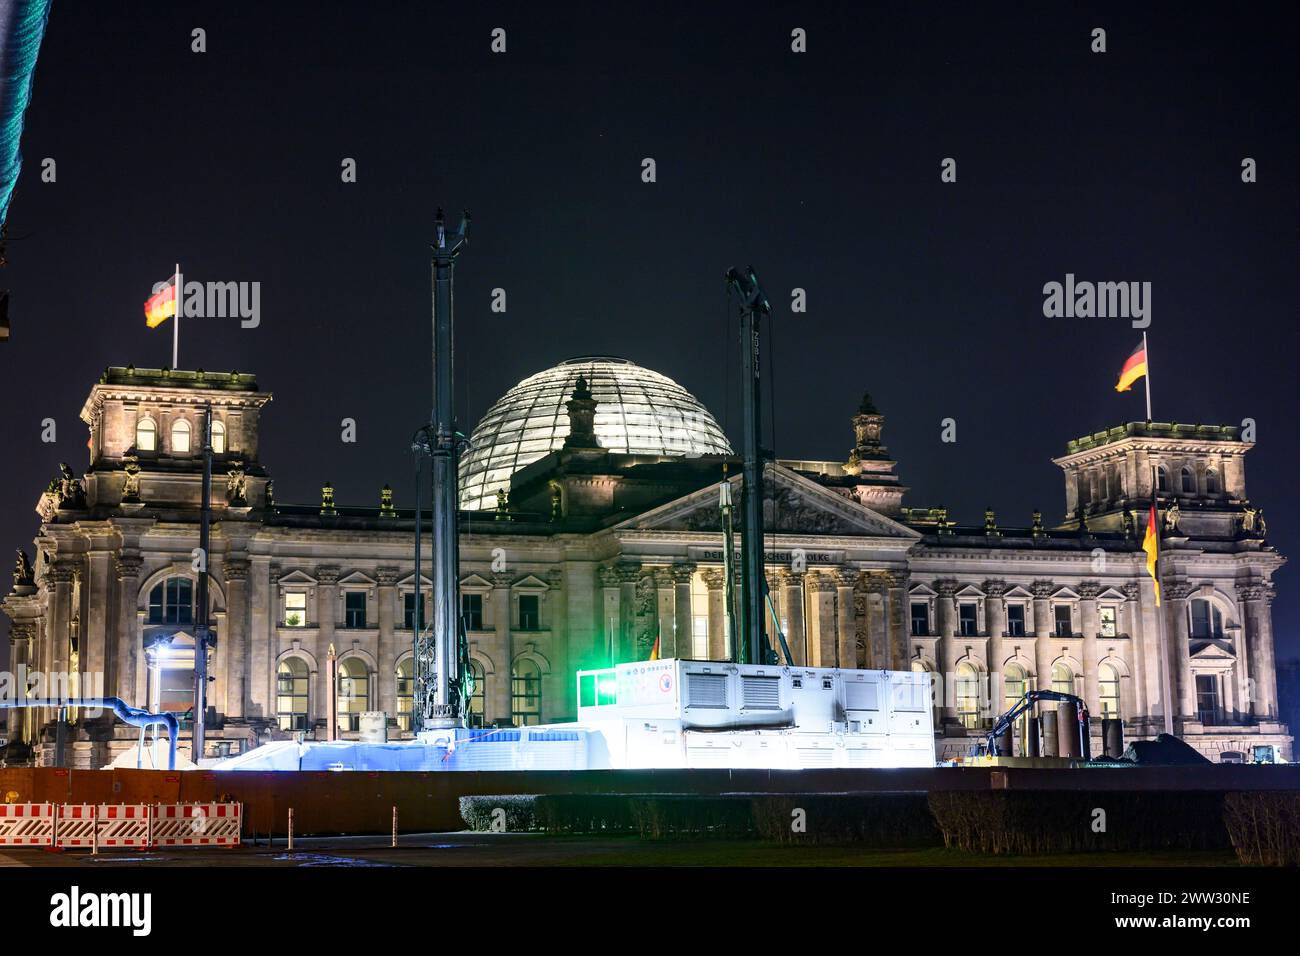 Der Reichstag, Bundestag - Baustelle, am Abend - Lichter der Grossstadt Berlinbilder - Strassen - Aufnahmen 24.02. 2024, Foto : Uwe Koch/HMB Media/Al Banque D'Images